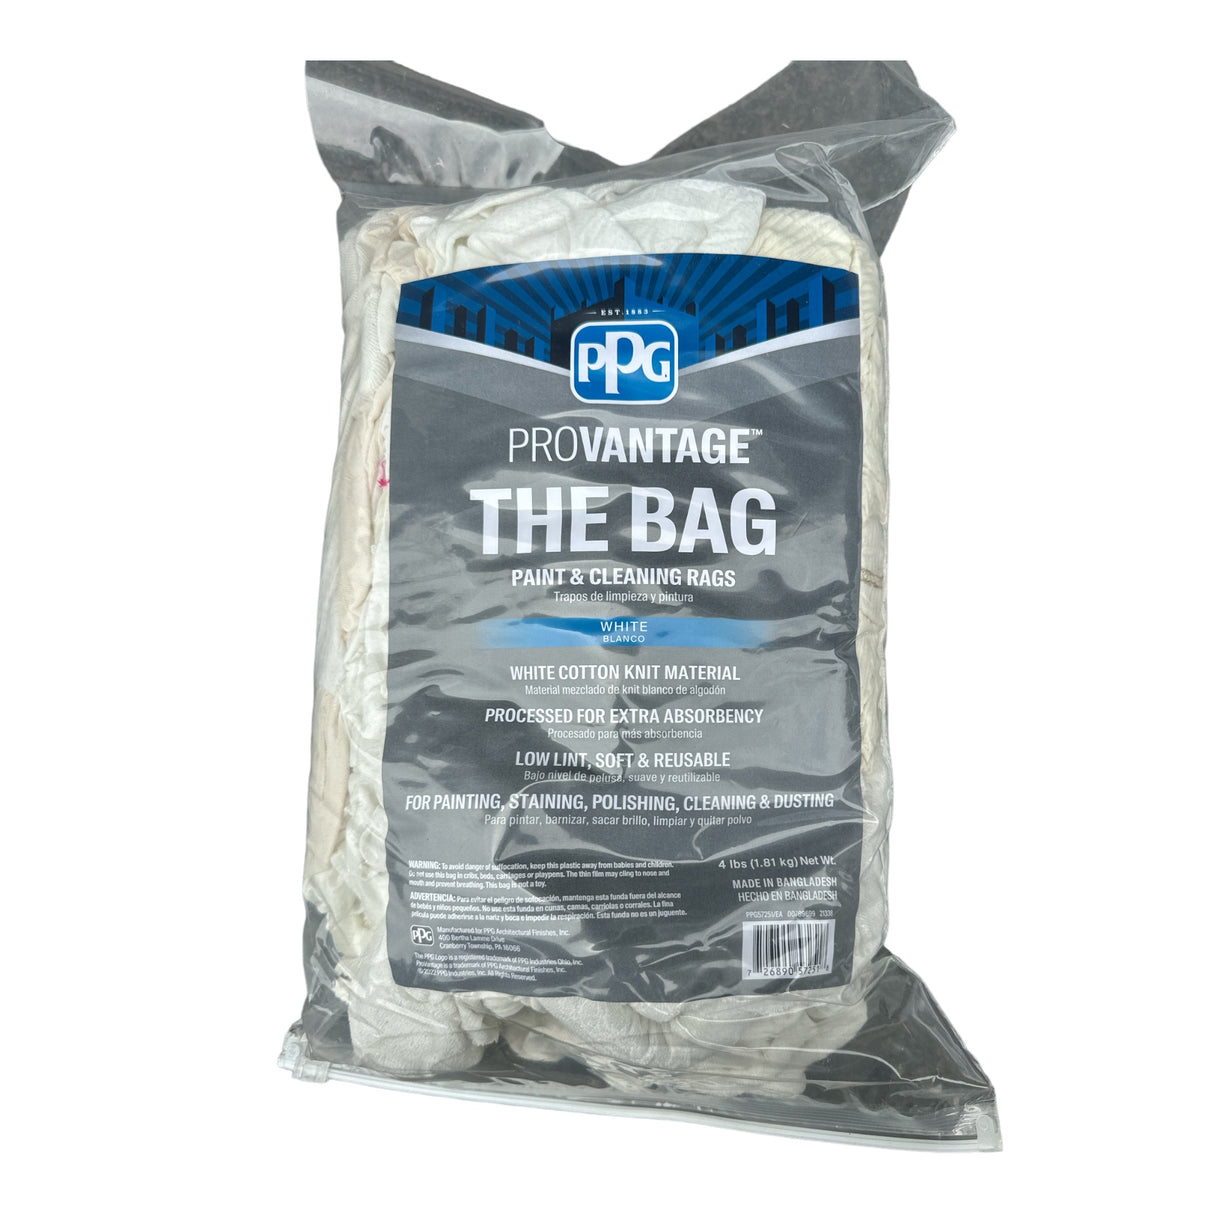 Trapos de limpieza y pintura PPG ProVantage “The Bag”